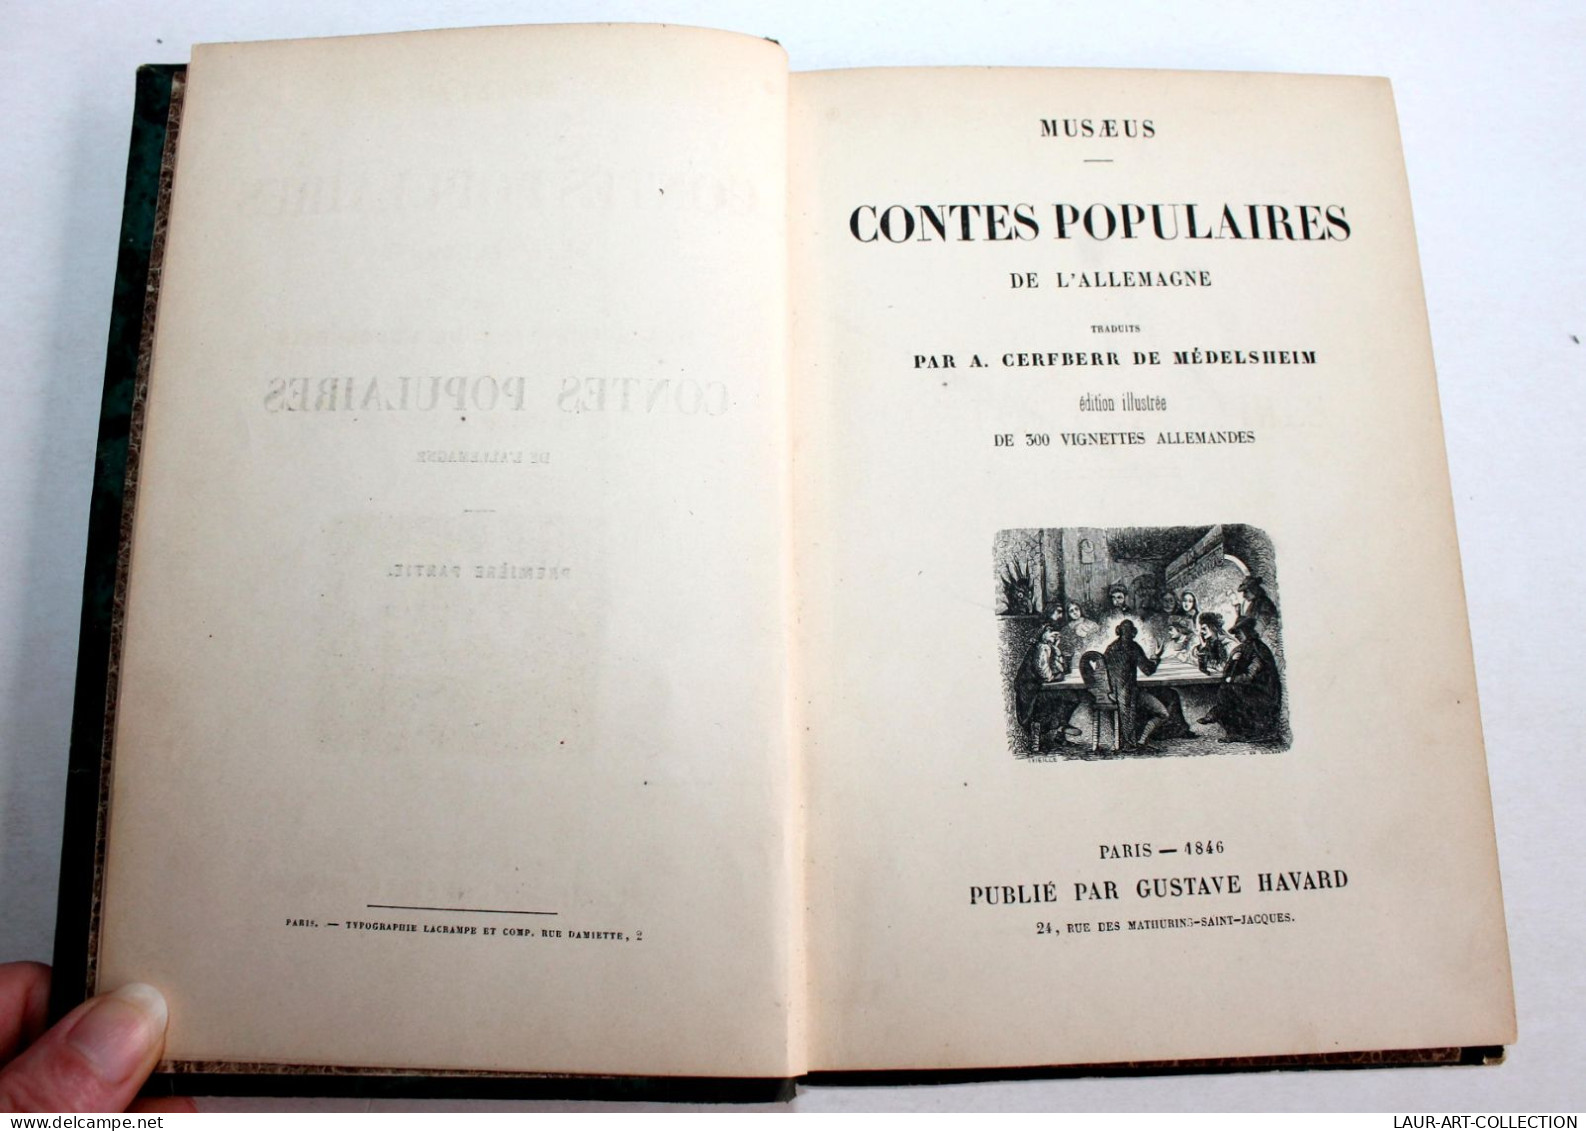 MUSAEUS CONTES POPULAIRES DE L'ALLEMAGNE TRADUIT DE MEDELSHEIM 300 VIGNETTE 1846 / ANCIEN LIVRE XIXe SIECLE (1803.179) - 1801-1900